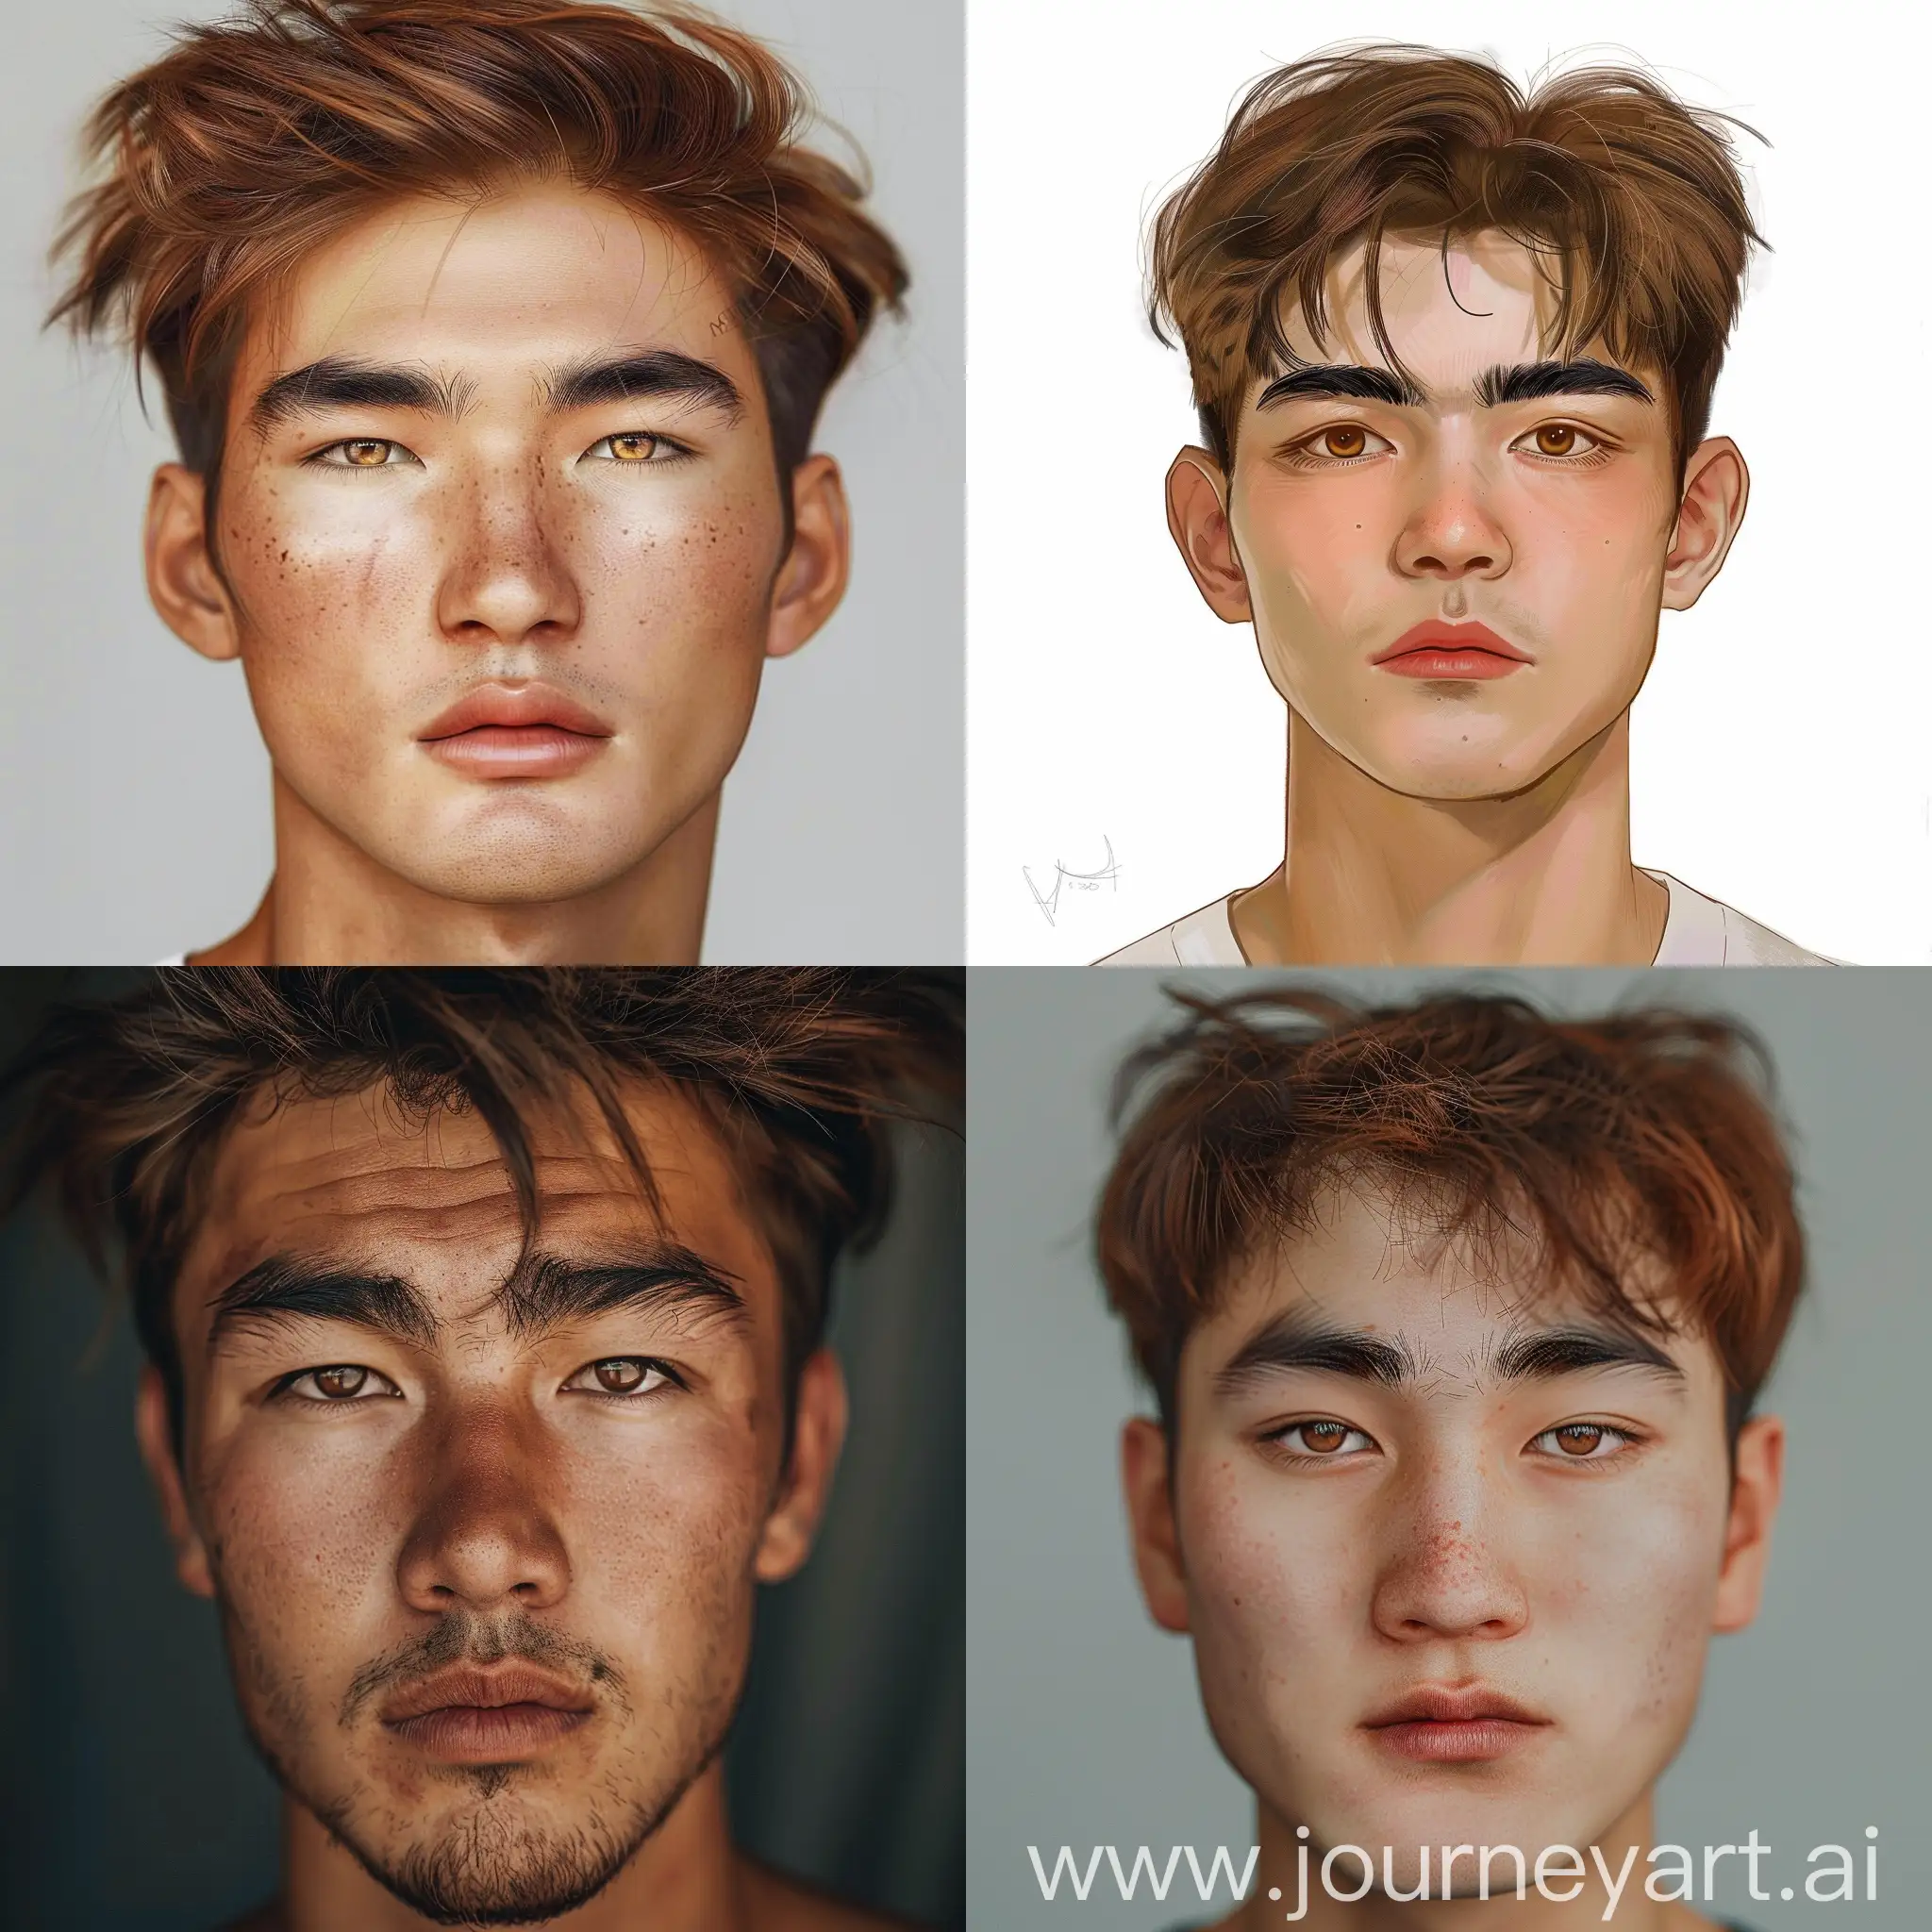 Portrait-of-a-Uzbek-Man-with-Distinctive-Facial-Features